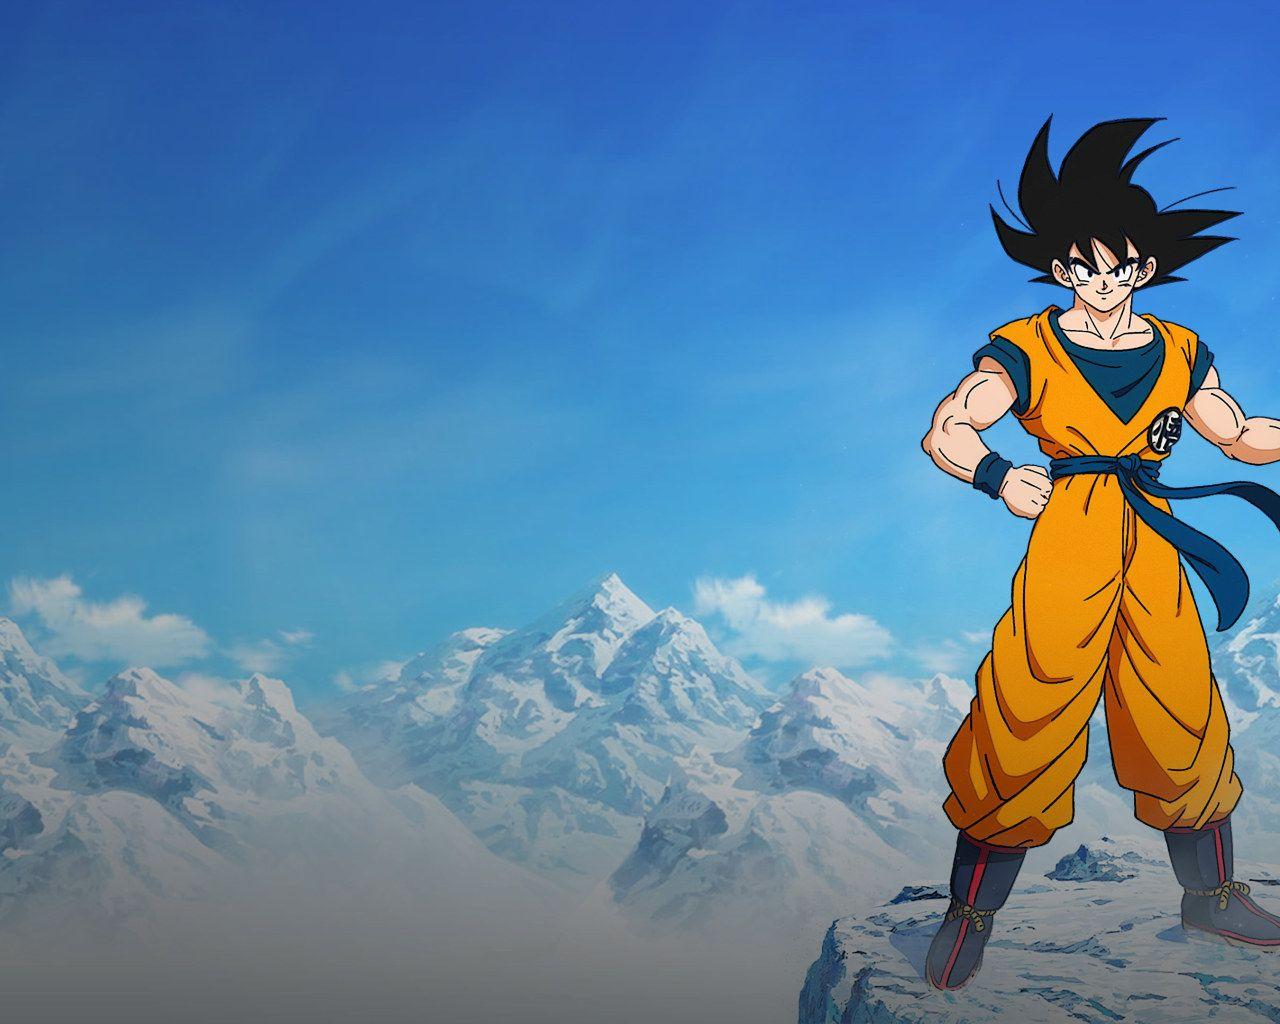 Goku Aesthetic Wallpapers - Top Free Goku Aesthetic Backgrounds